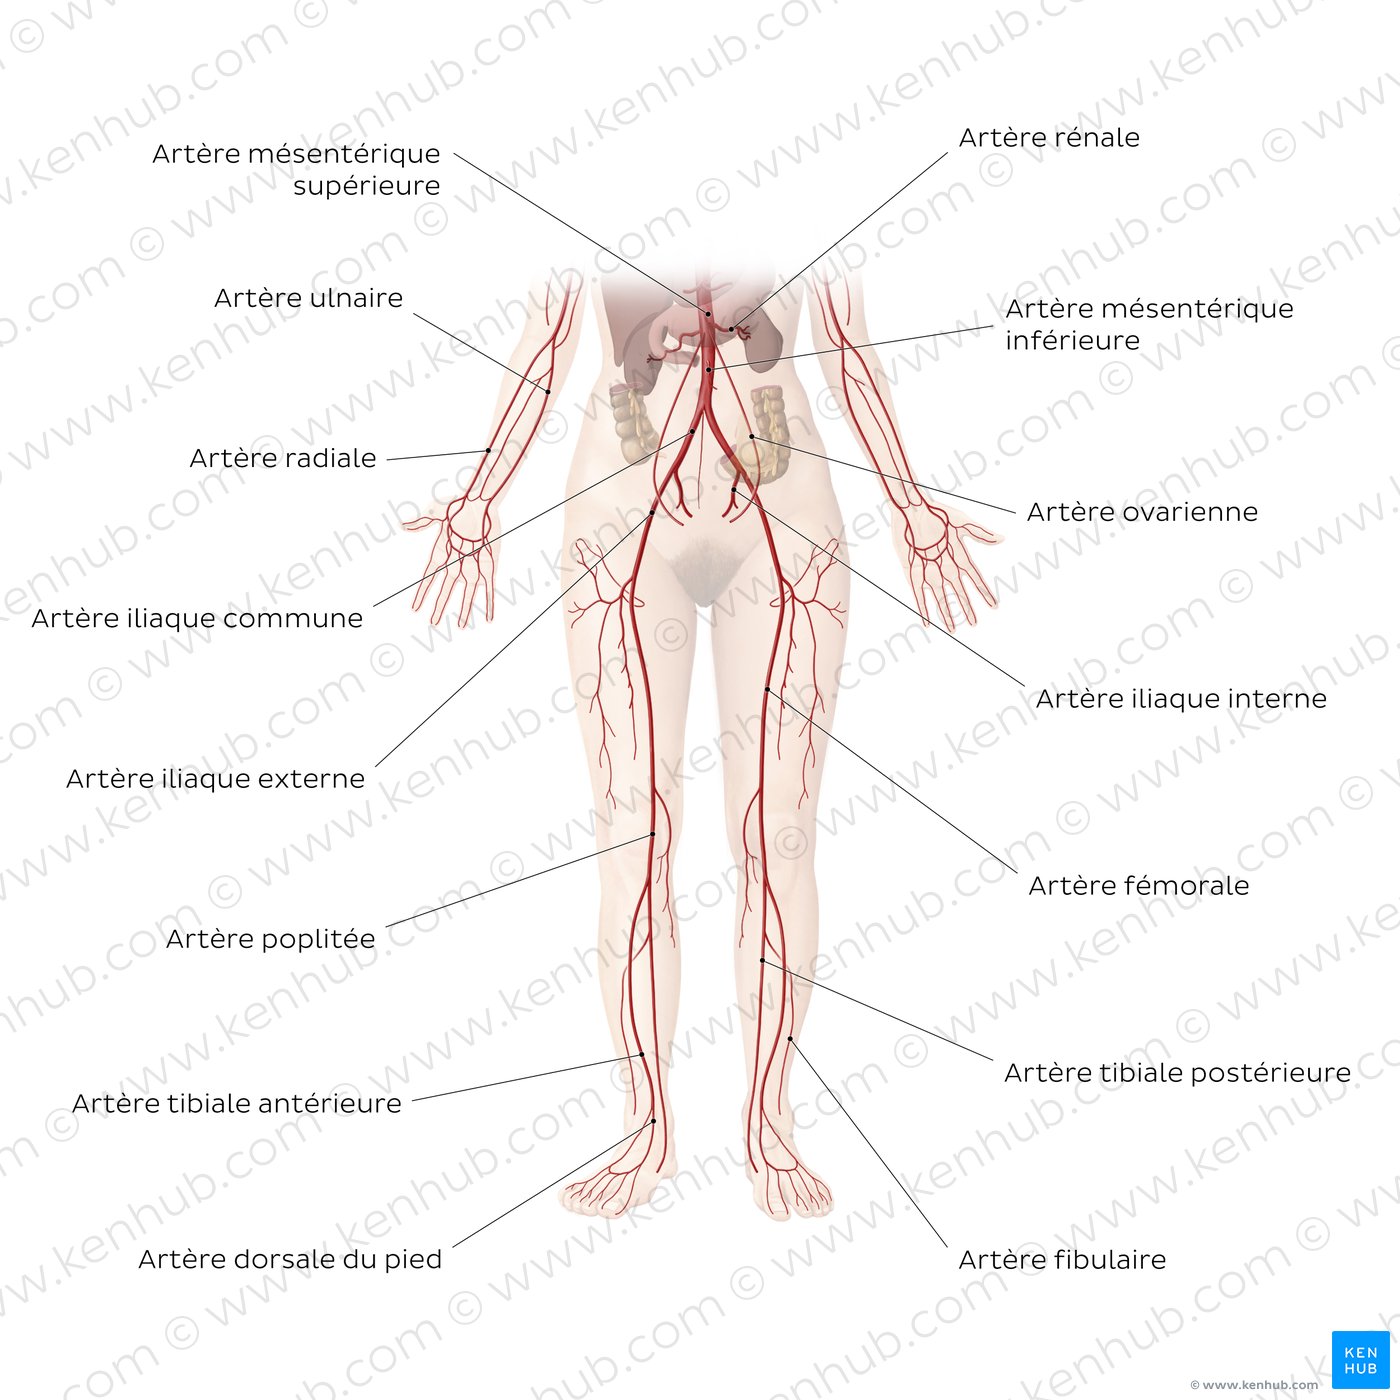 Système cardiovasculaire : Artères de la partie inférieure du corps